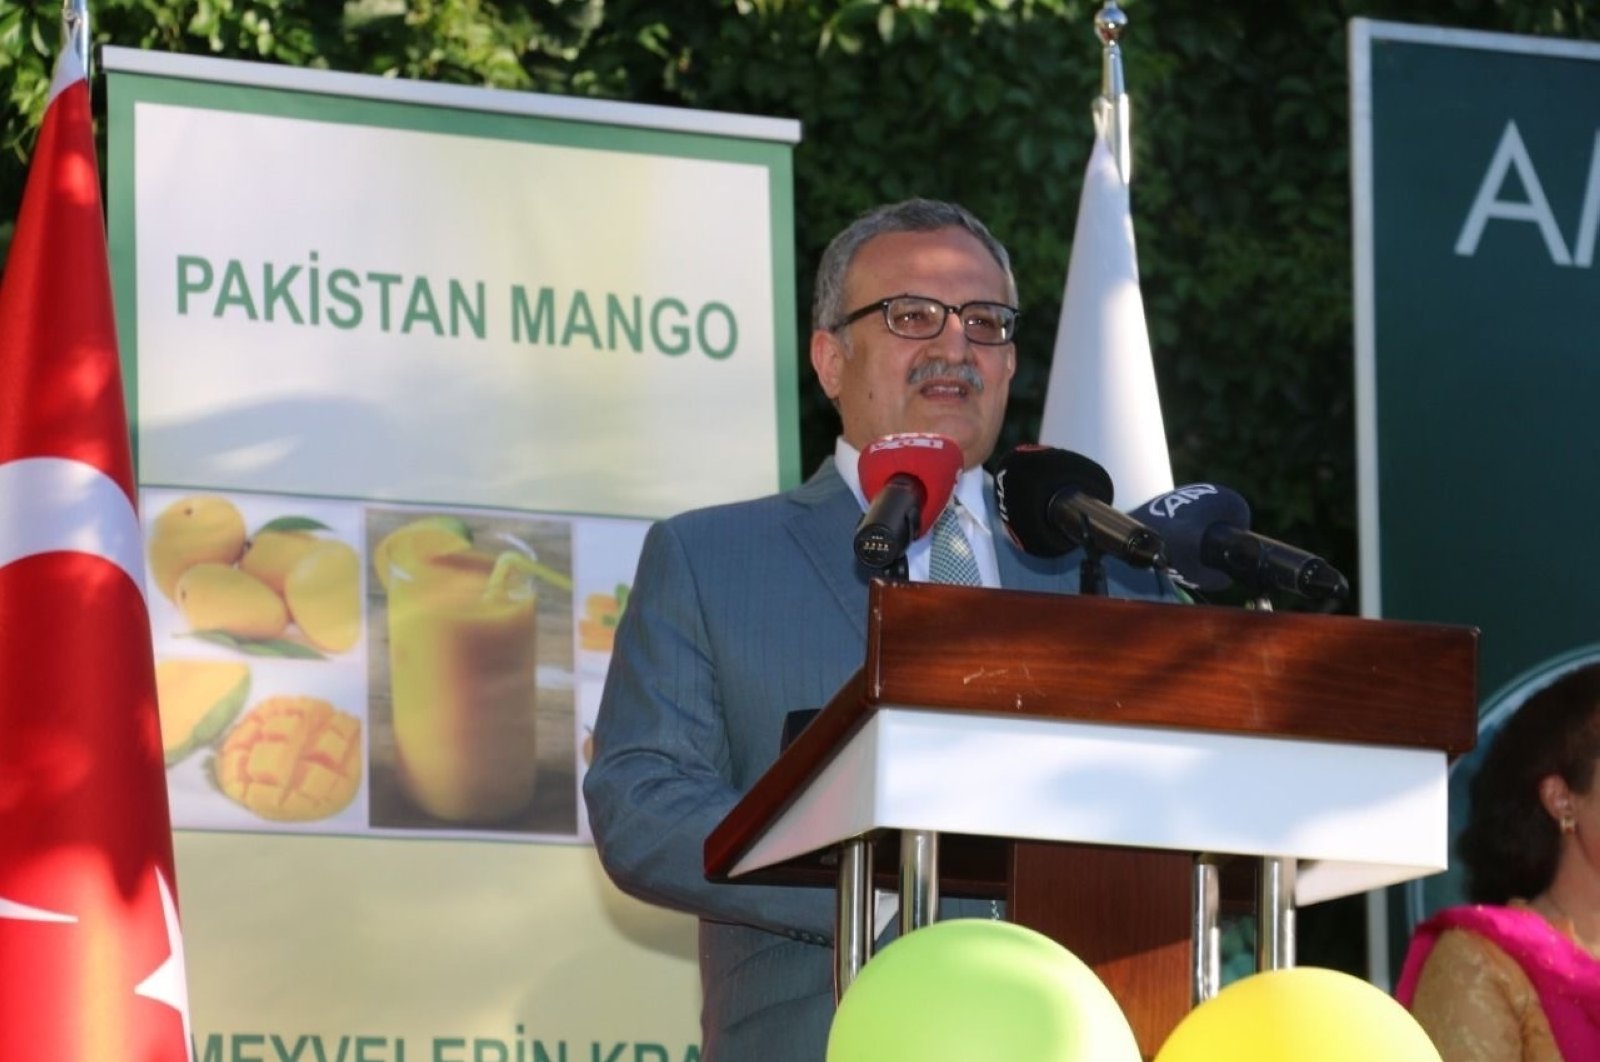 Kedutaan Besar Pakistan Rayakan Festival Mangga di Ankara